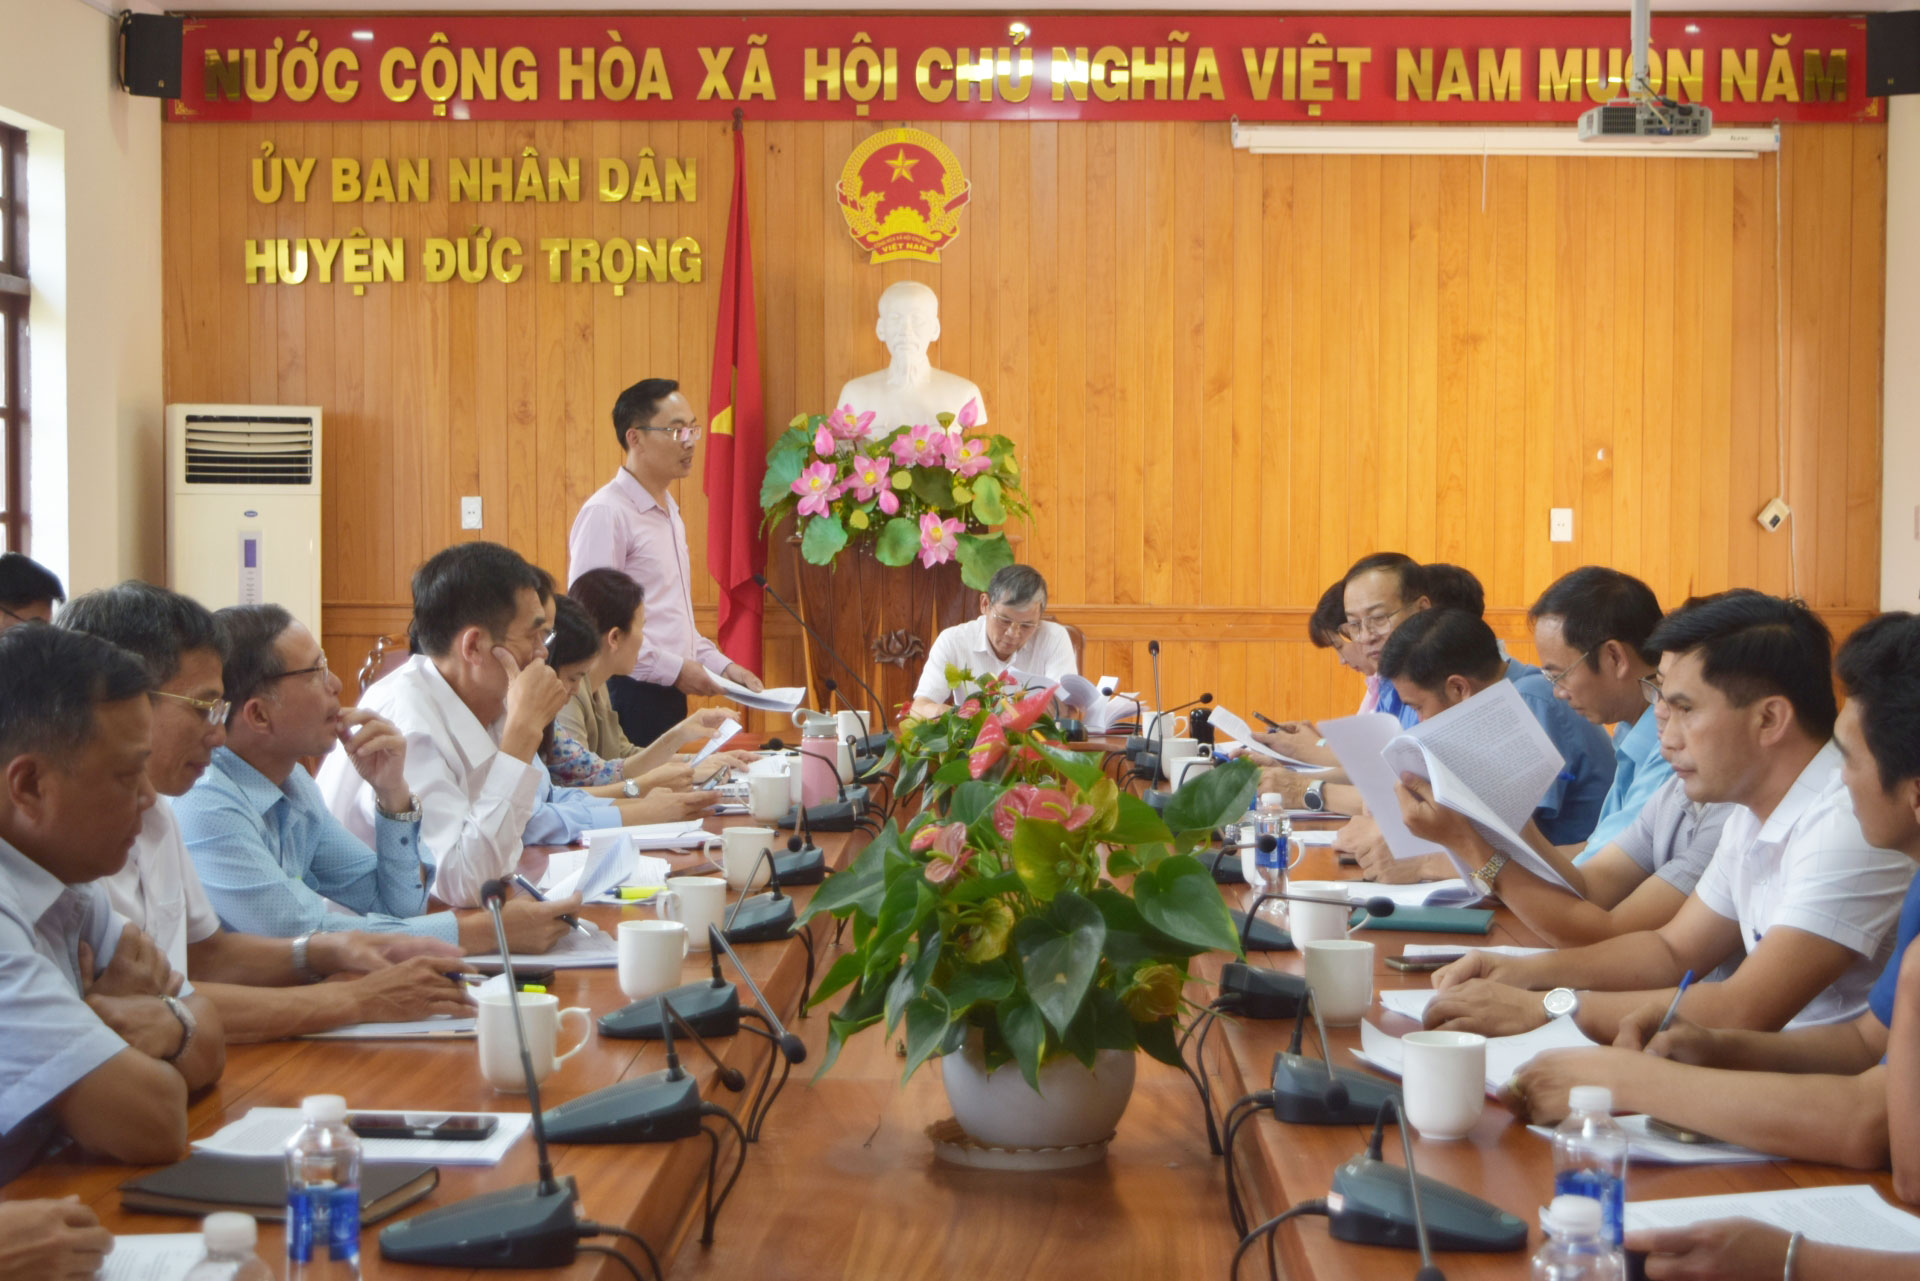 Đồng chí Lê Đình Nam - Phó Giám đốc phụ trách phòng giao dịch NHCSXH huyện Đức Trọng, báo cáo hoạt động 3 tháng đầu năm